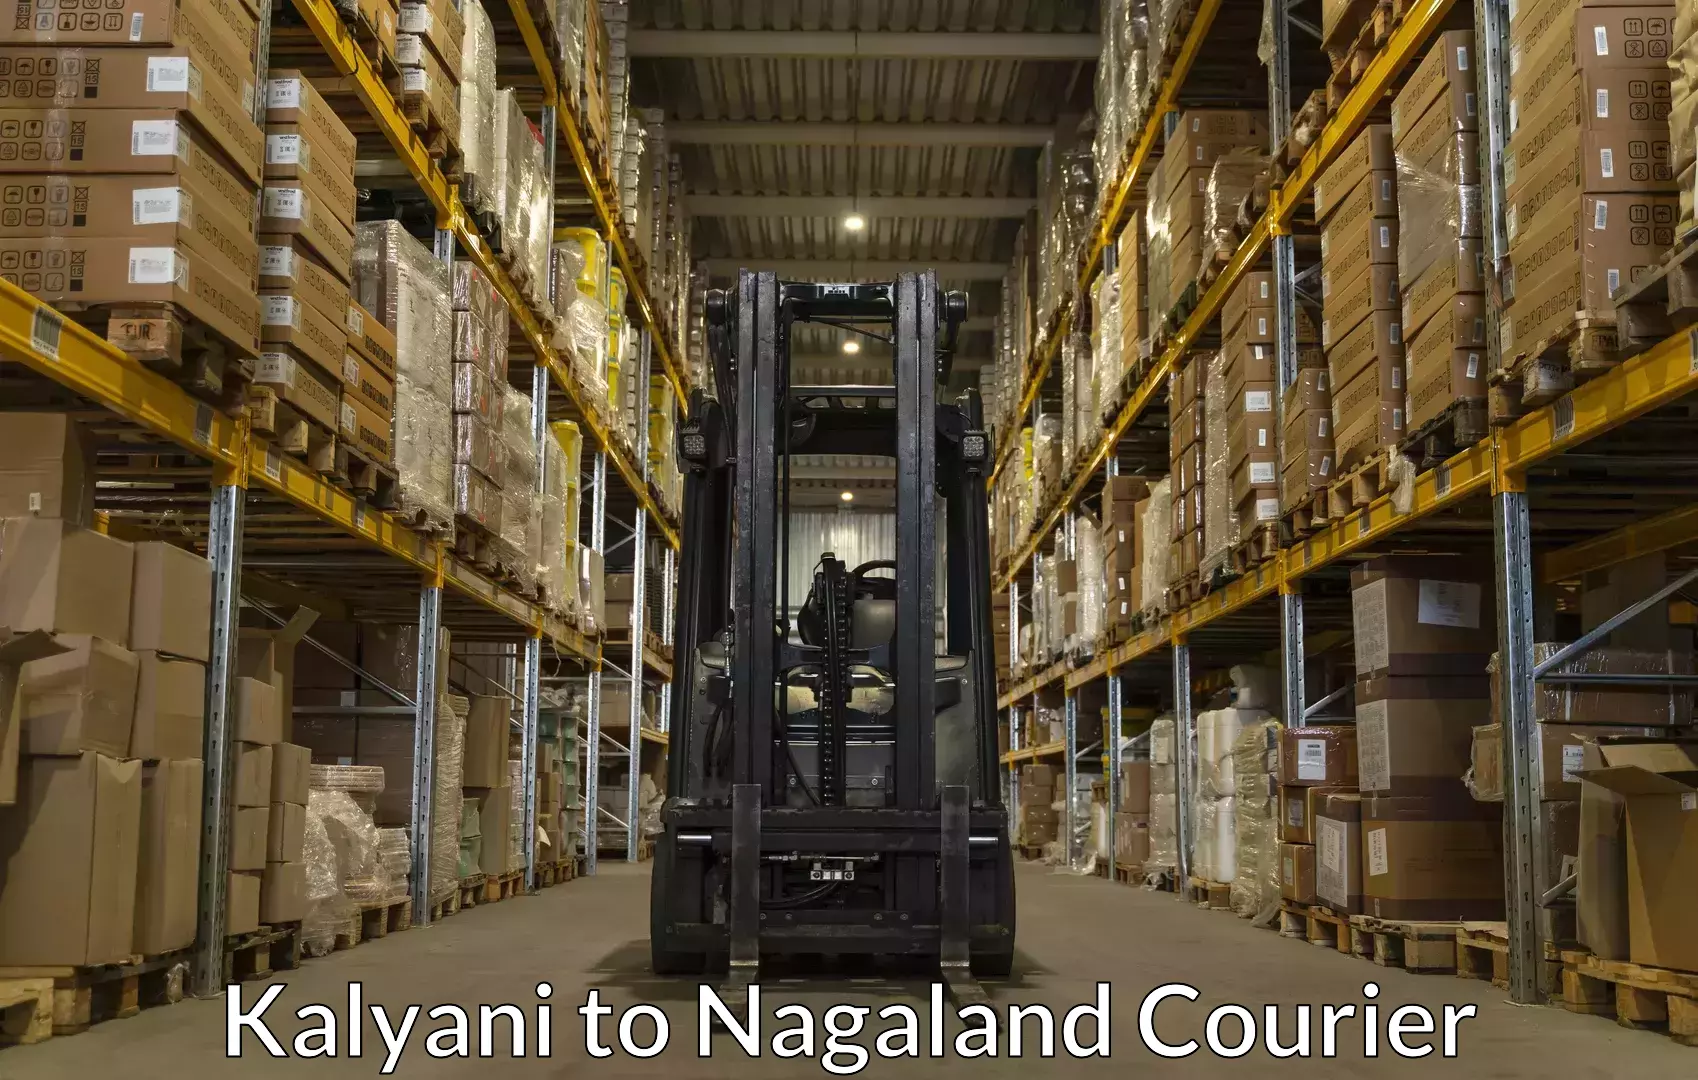 Baggage transport network Kalyani to Nagaland